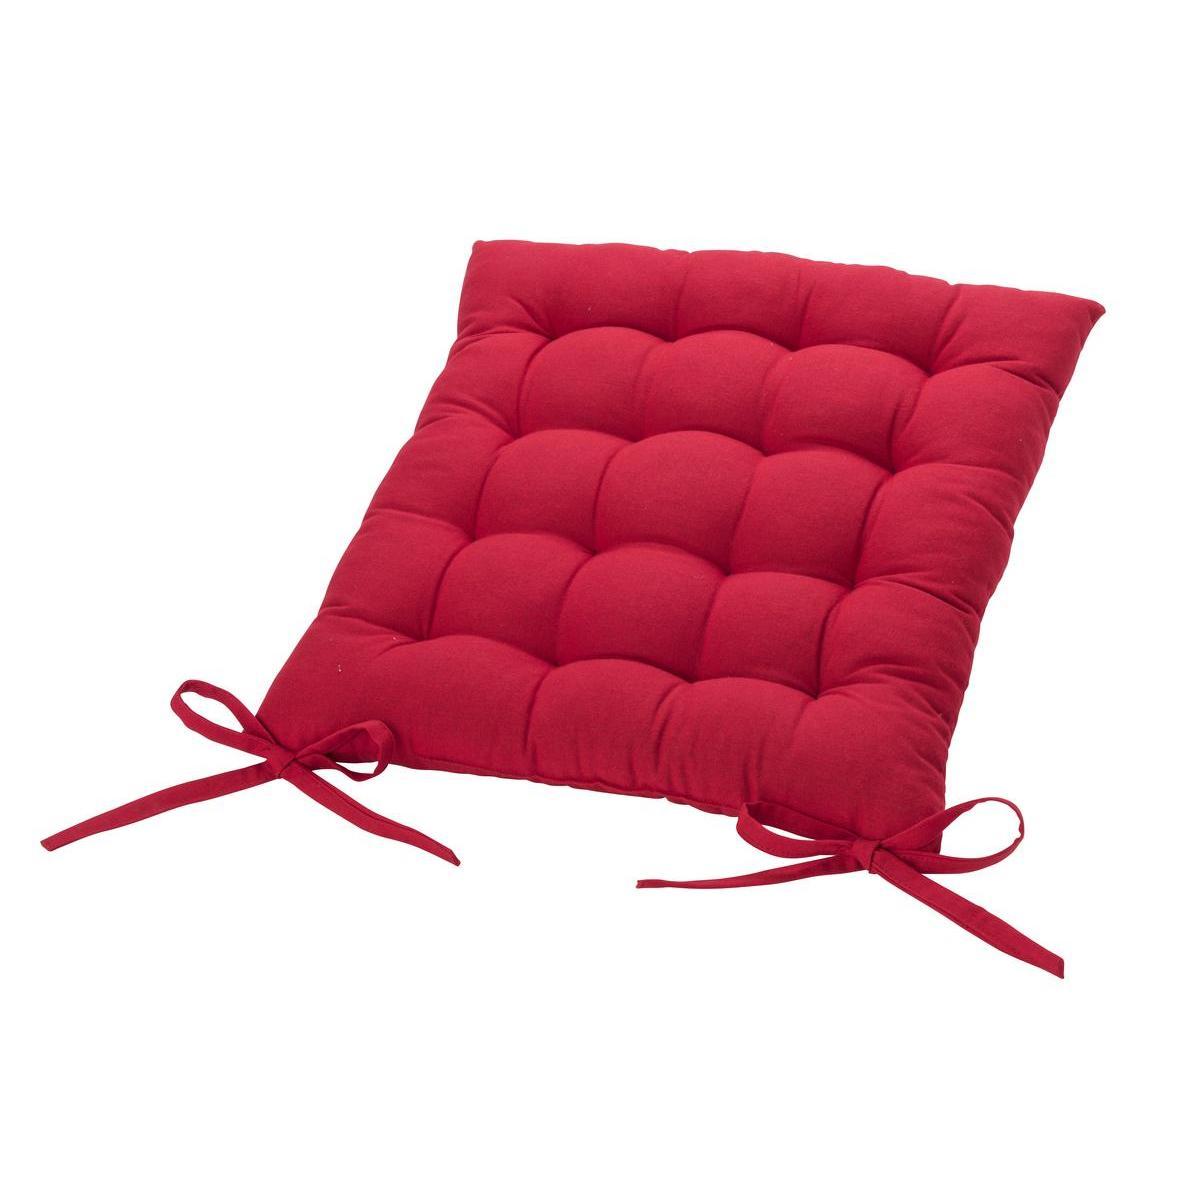 Galette de chaise - 40 x 40 cm - Rouge